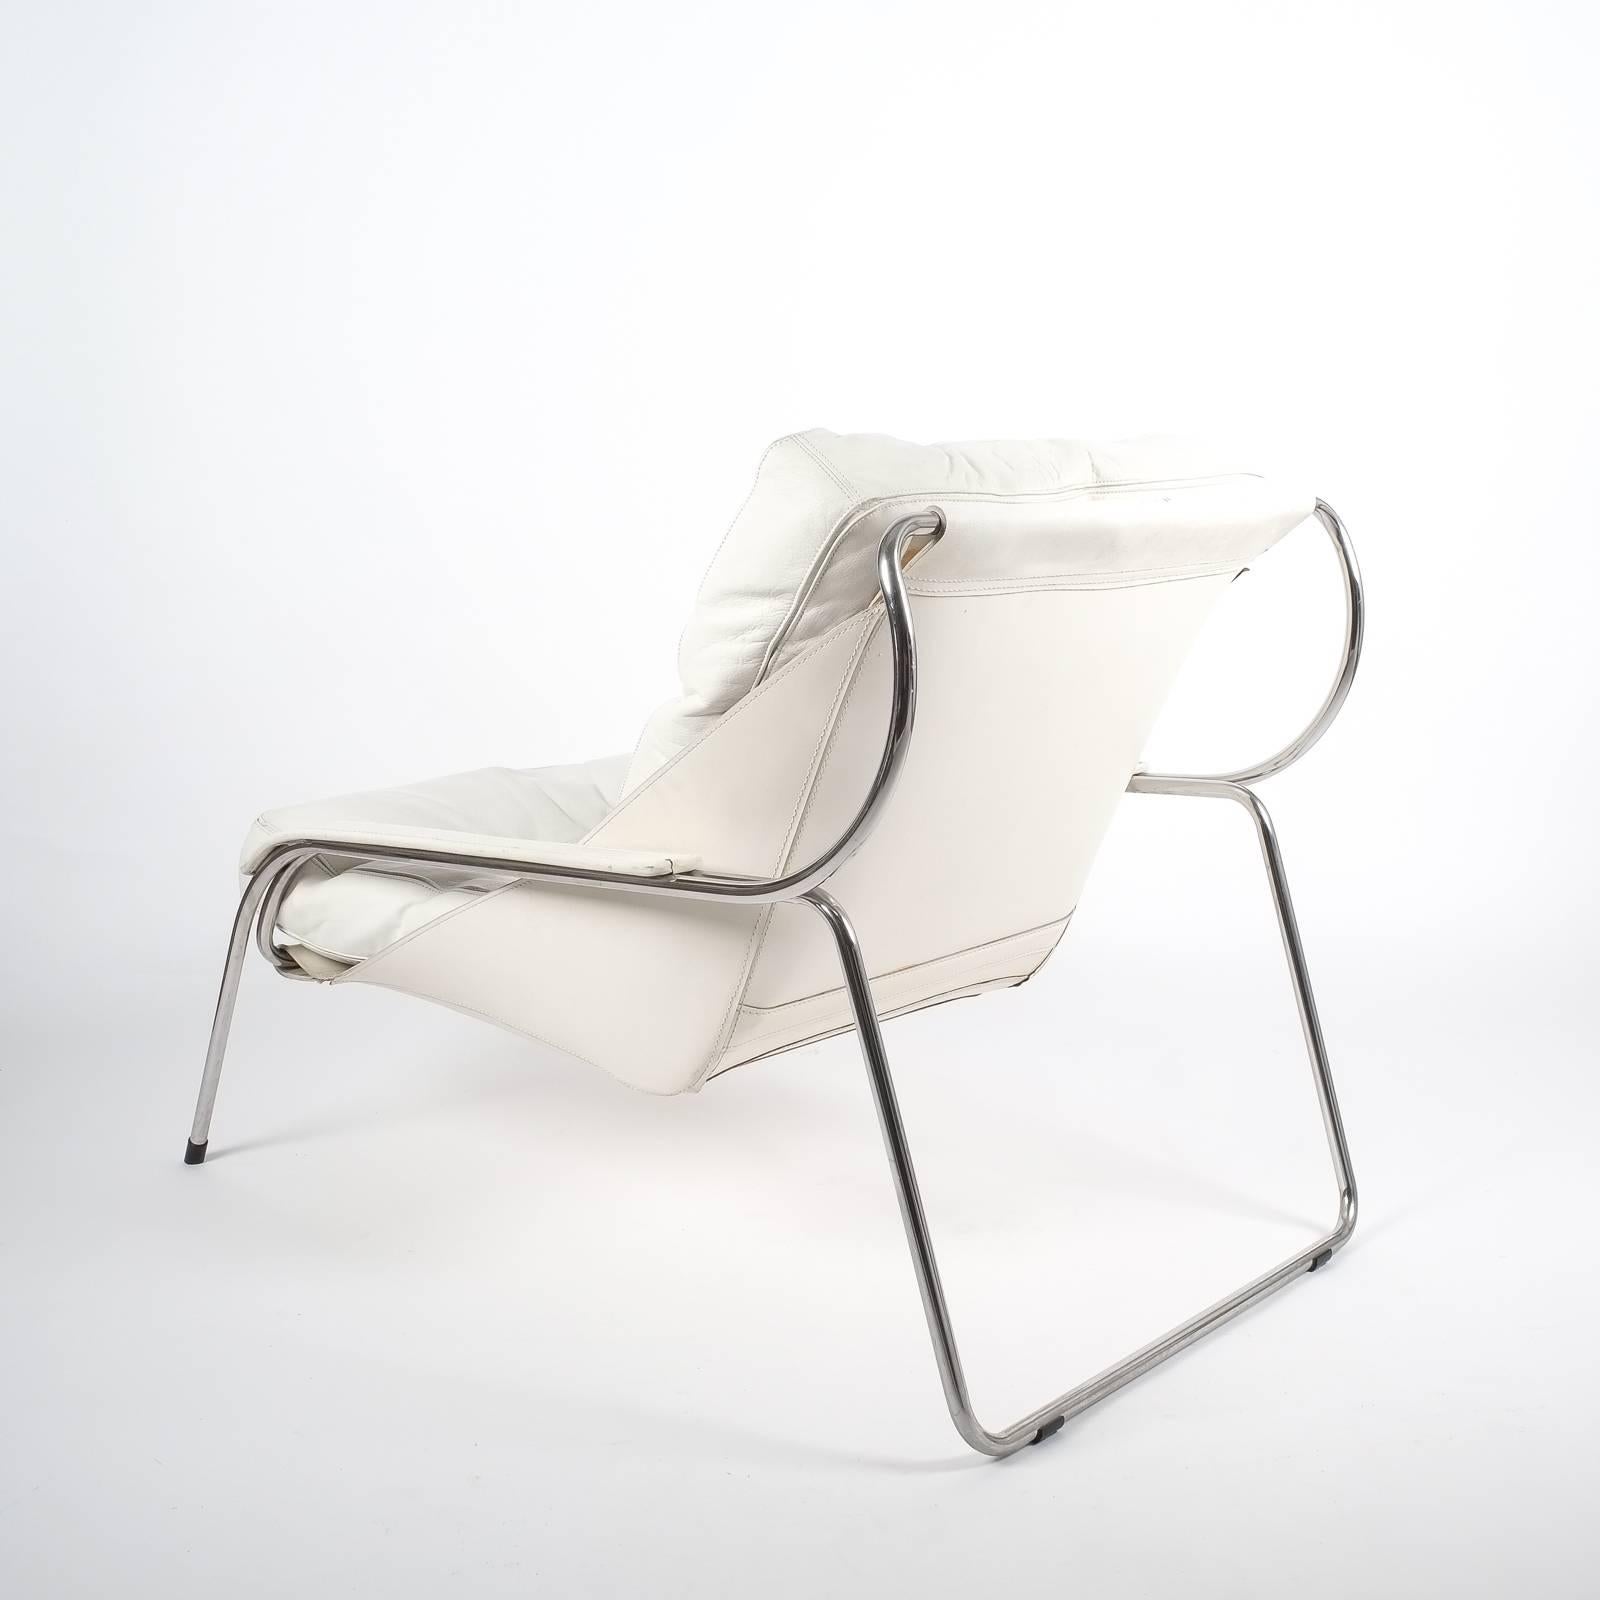 Italian Marco Zanuso Maggiolina White Leather Chair by Zanotta, 1947 For Sale